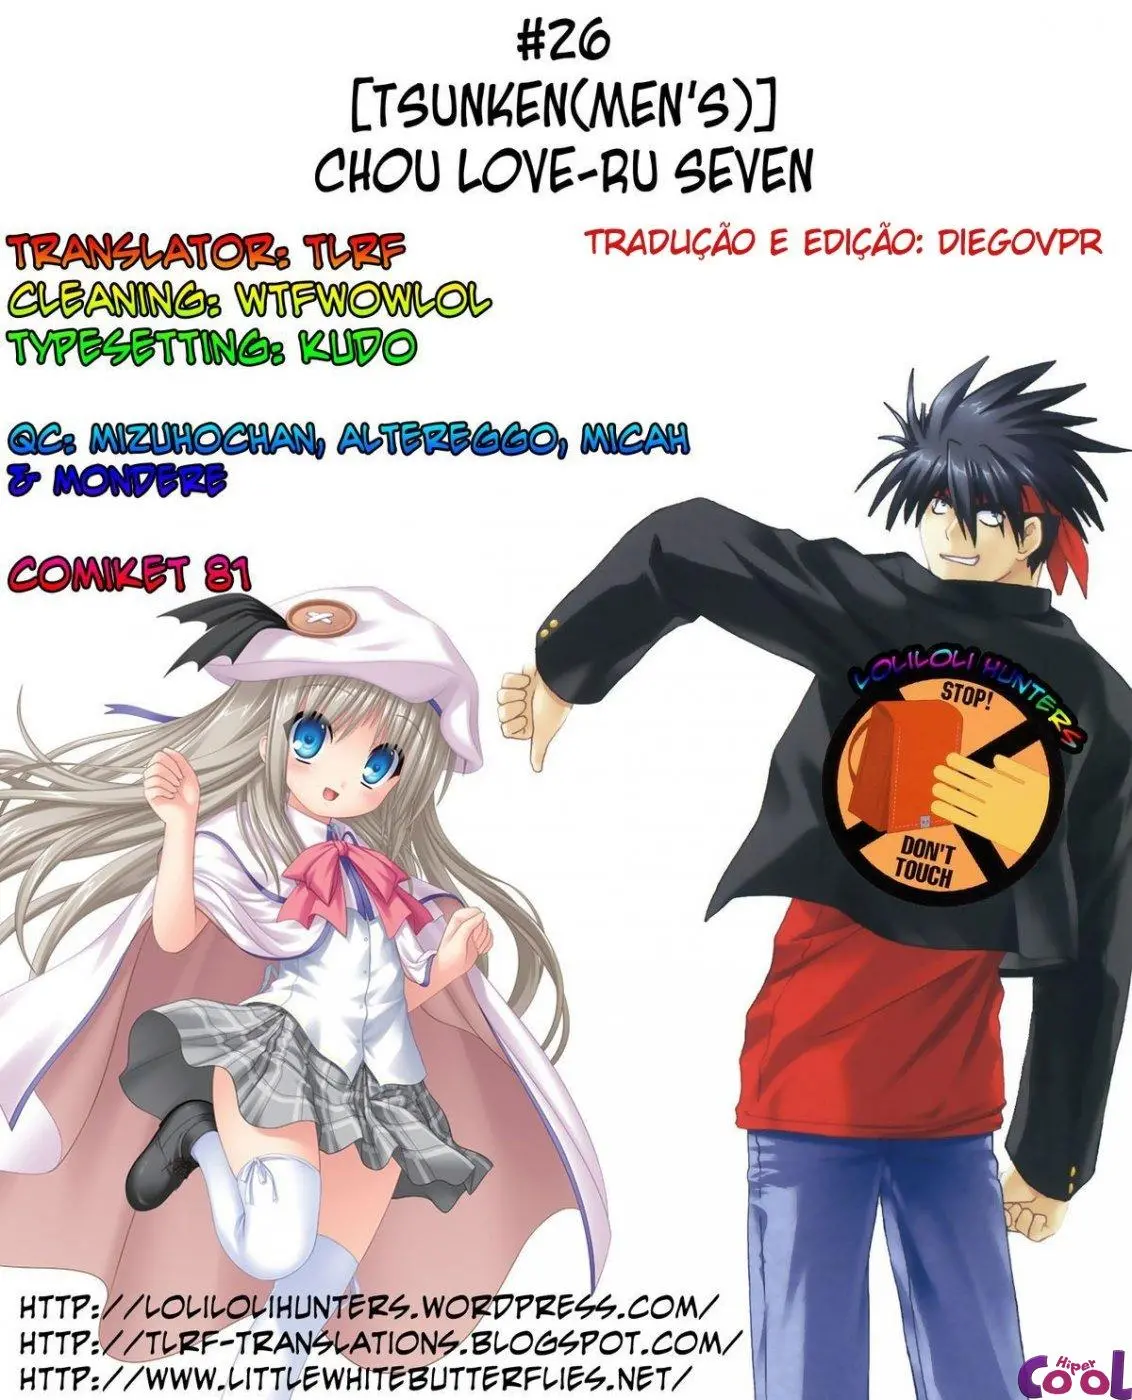 Chou LOVE-ru Seven